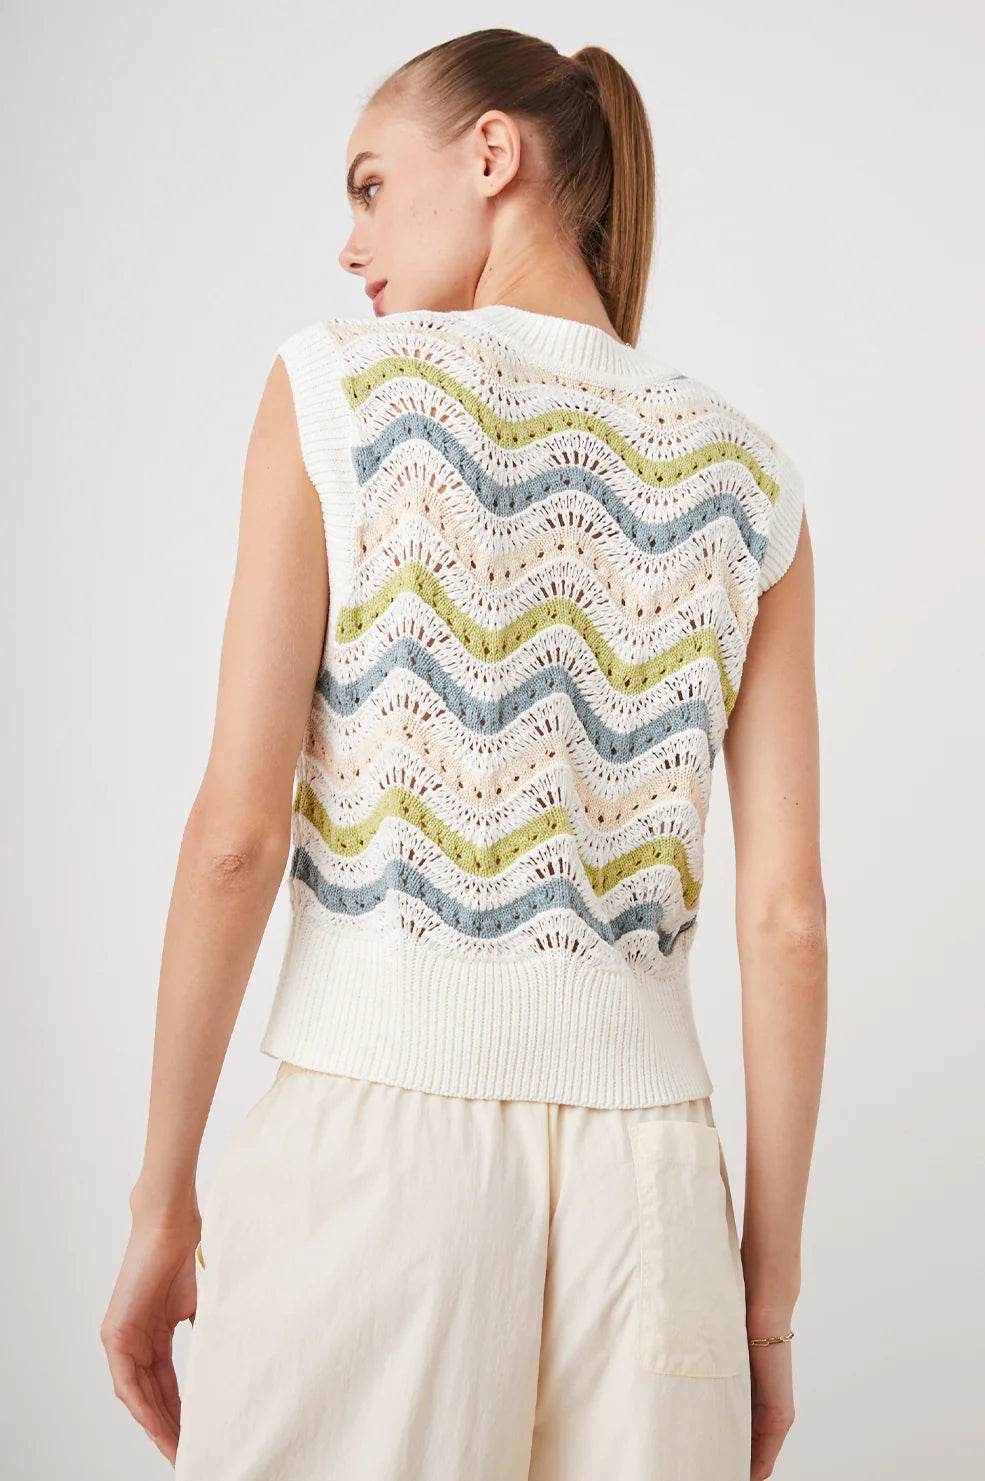 Mabel Sweater in Crochet Stripe